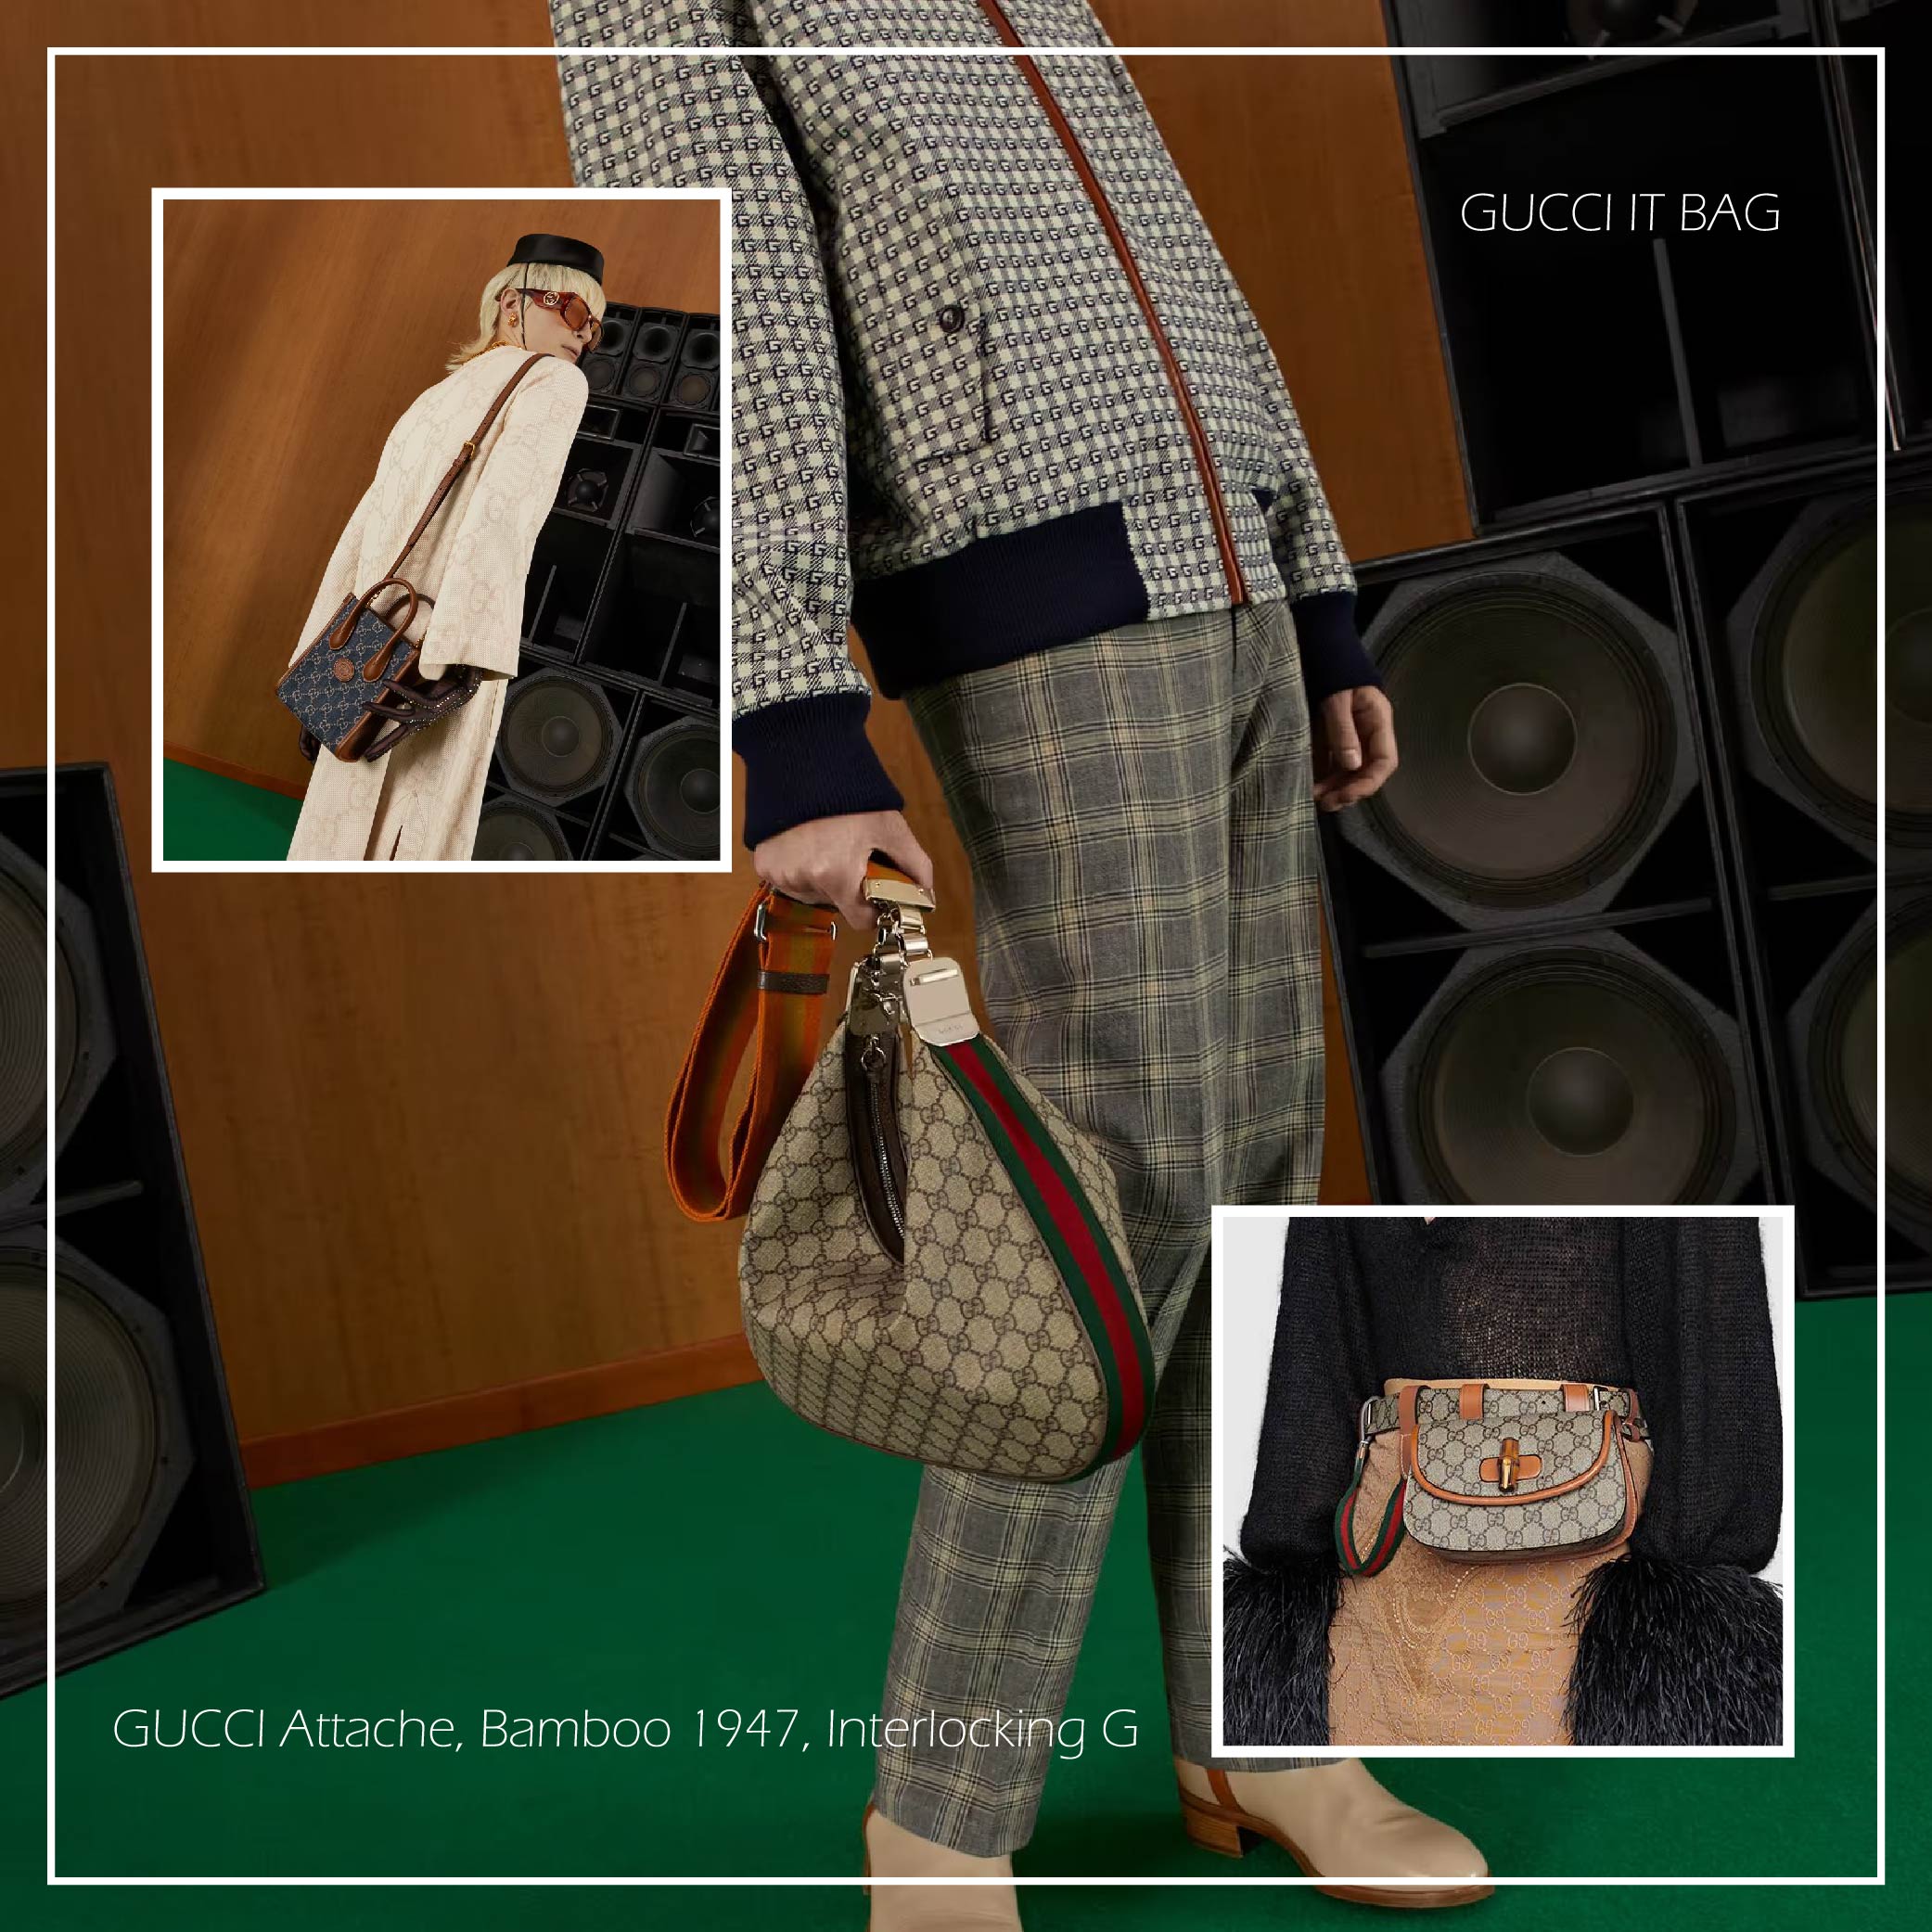 Gucci搶翻天的幸運餅乾attache bag和bamboo1947以及interlocking g